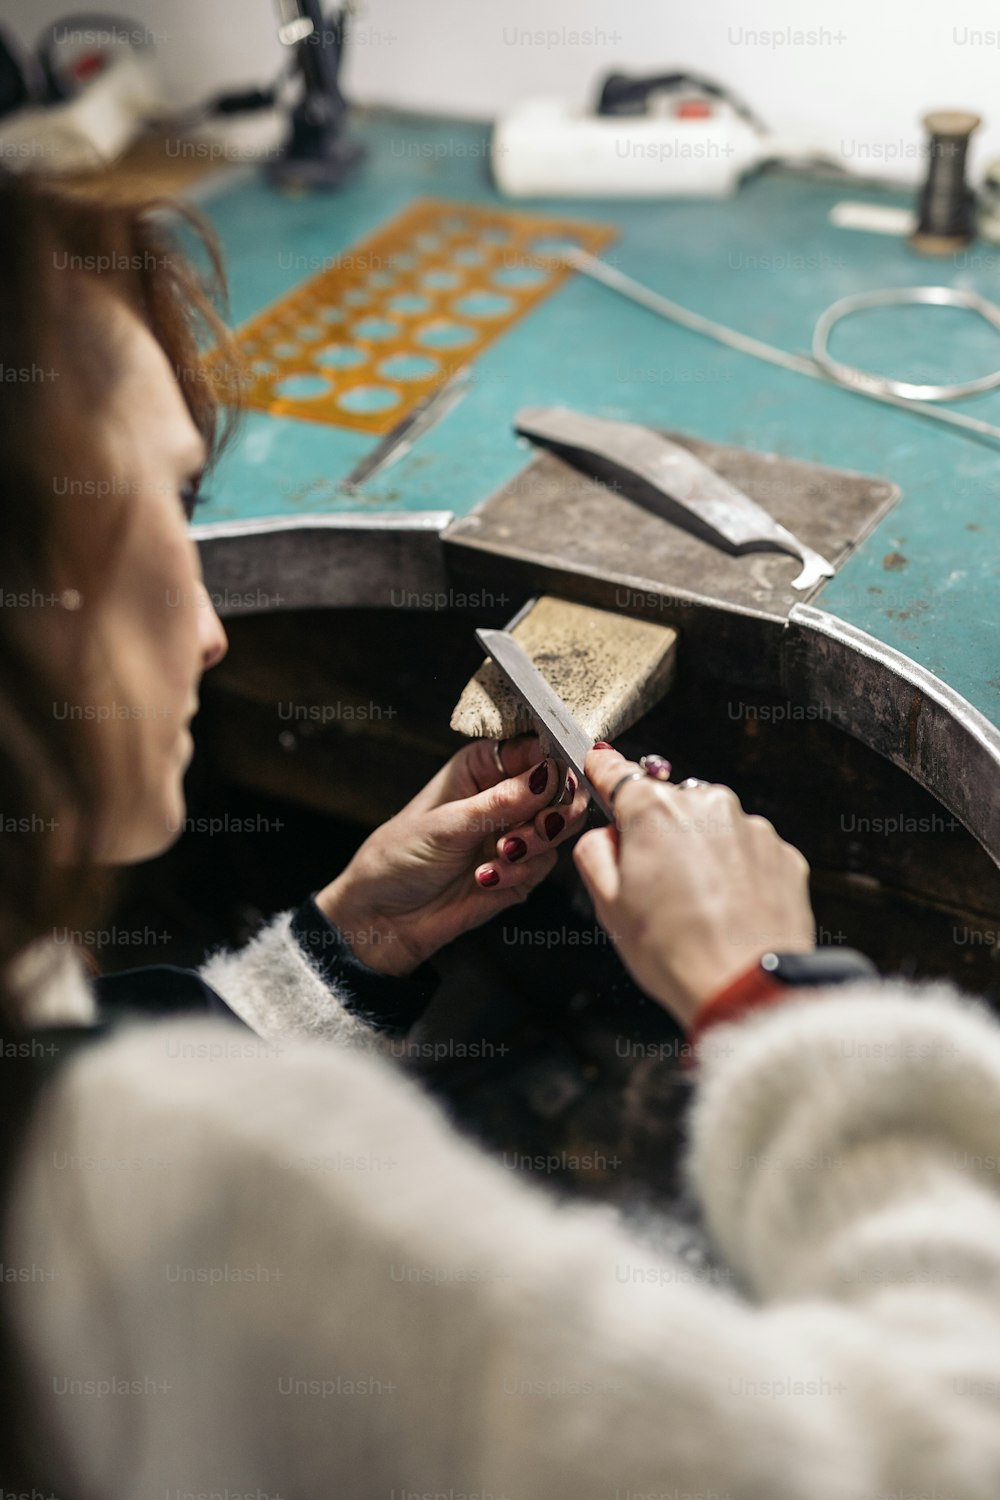 Mujer adulta concentrada trabajando en taller de joyería.